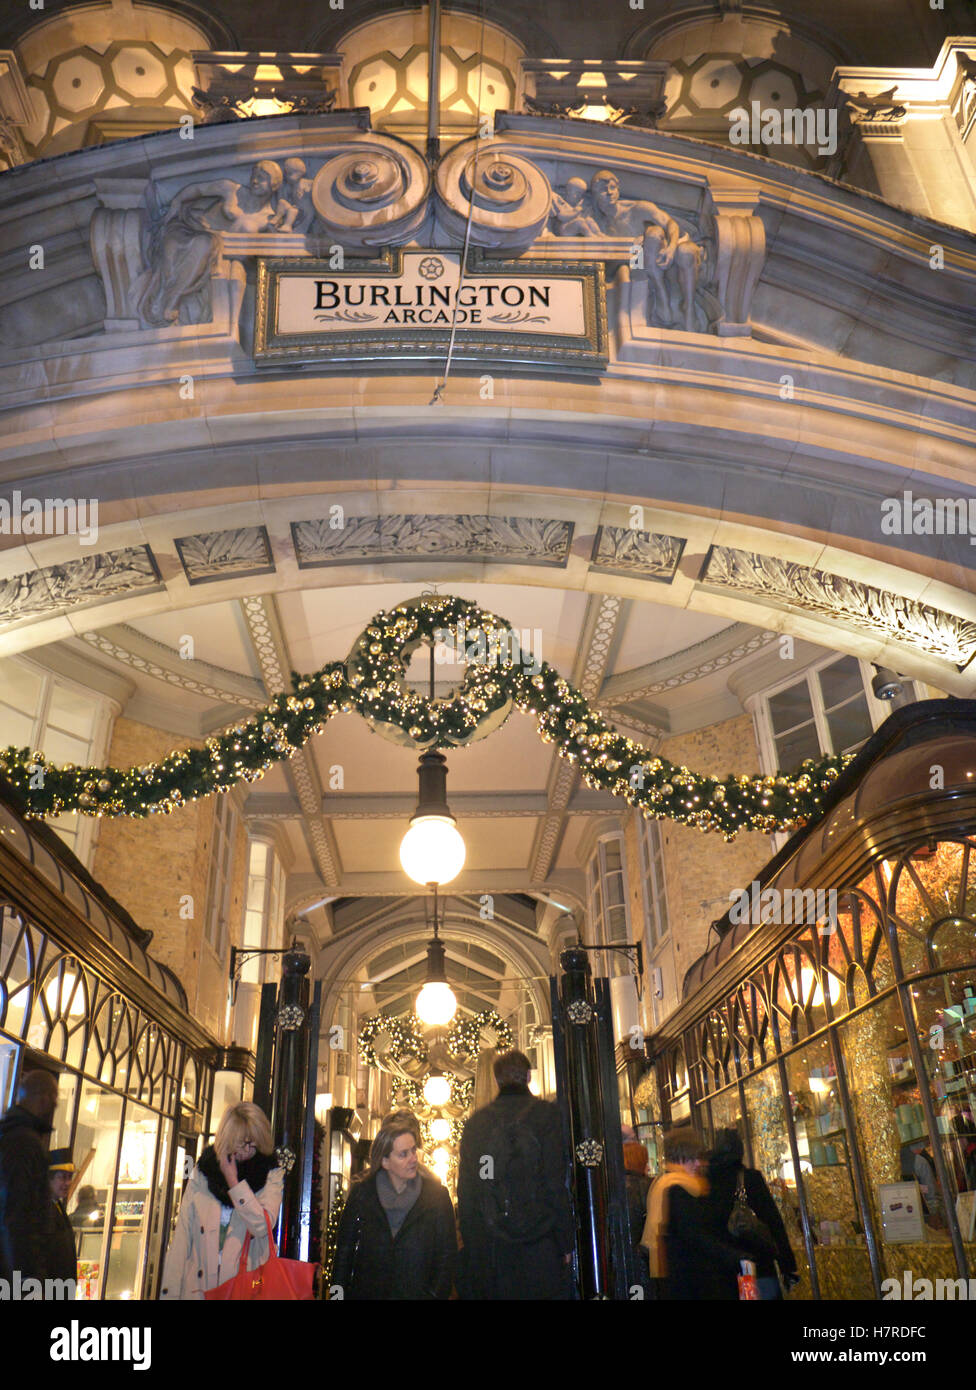 Burlington lusso tradizionale Londra shopping arcade ingresso occupato in Piccadilly con luci e decorazioni natalizie al crepuscolo Foto Stock